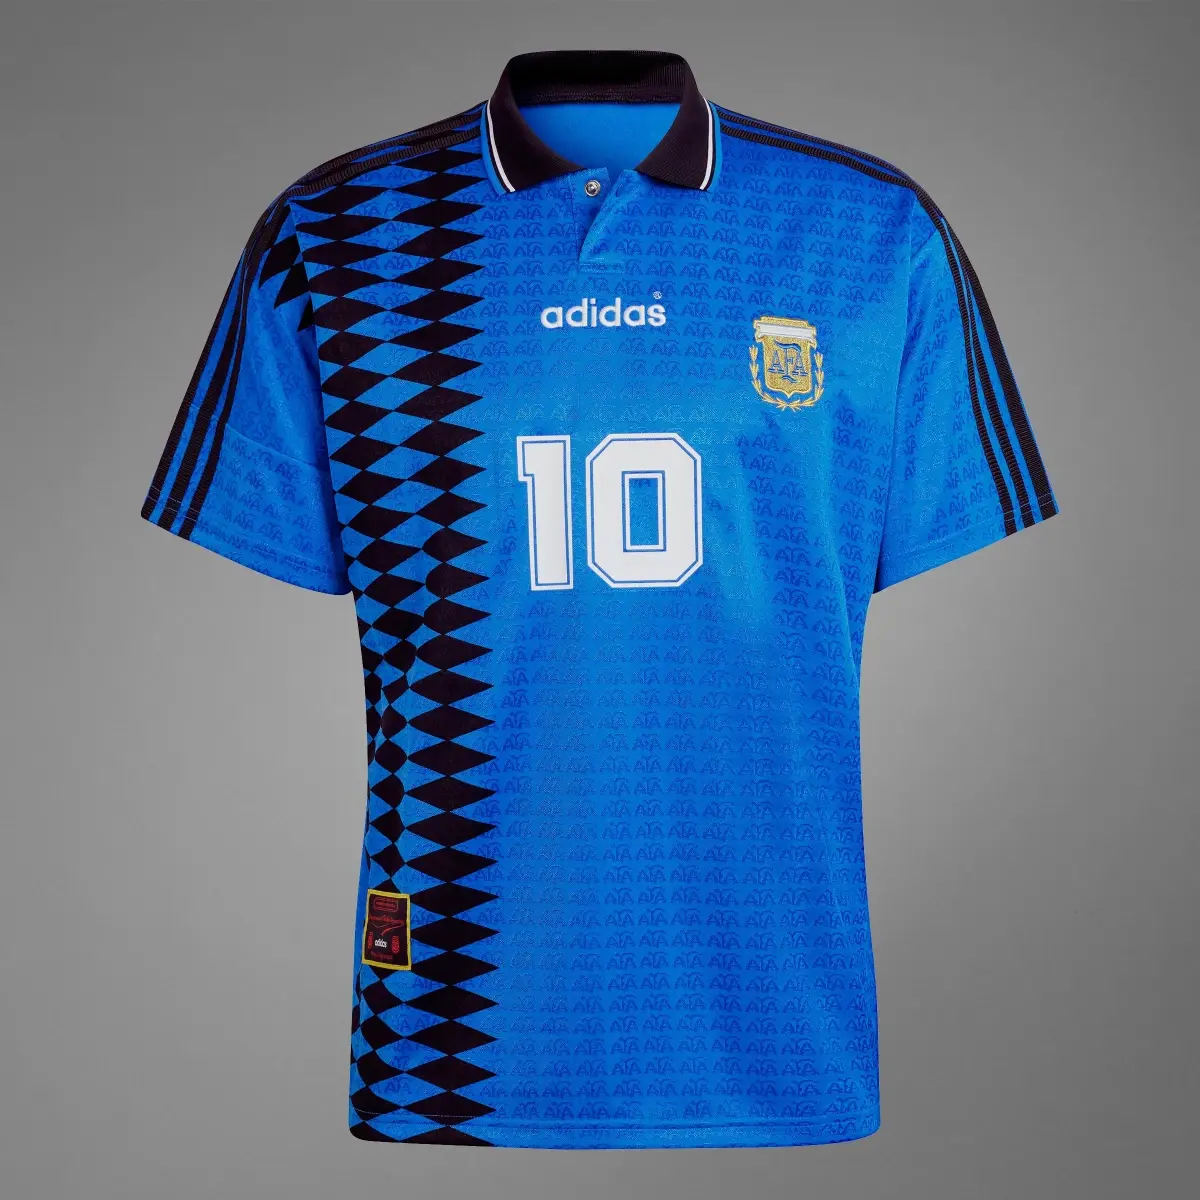 Adidas Argentina 1994 Away Jersey. 3